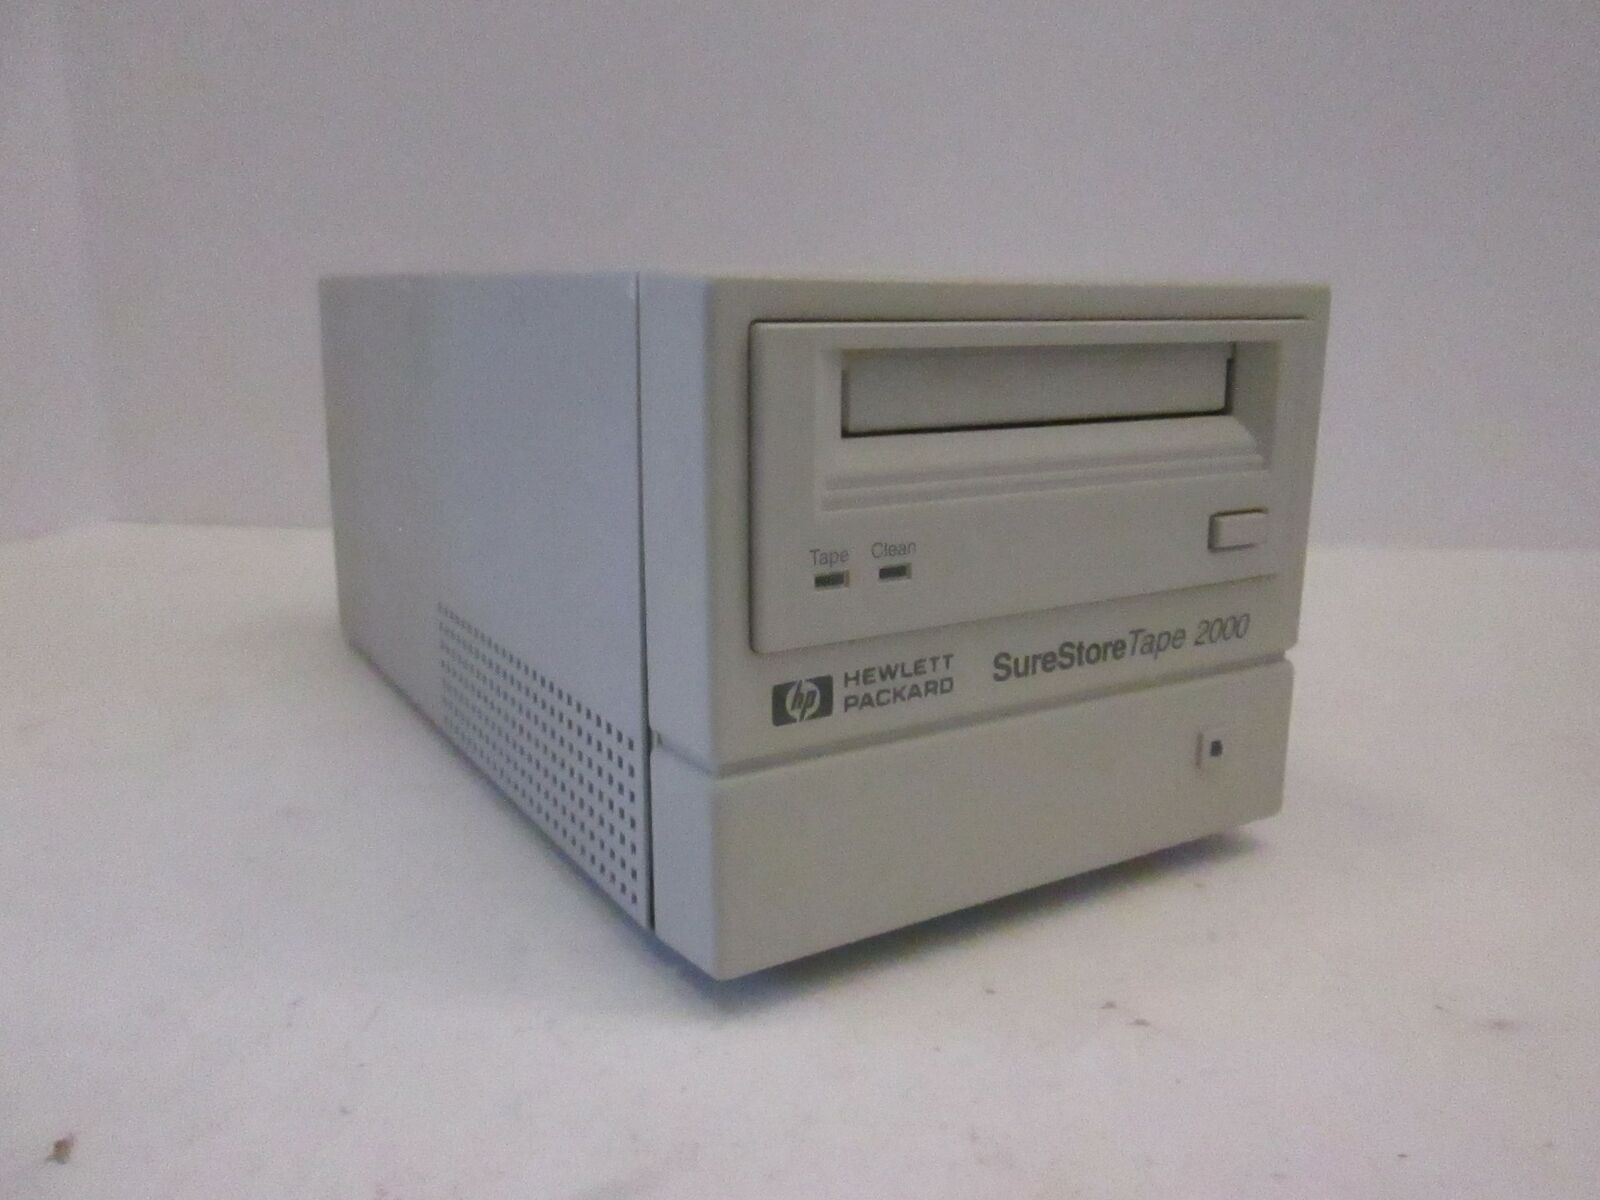 Hewlett Packard, DAT Internal Drive, SureStore Tape 2000, Used